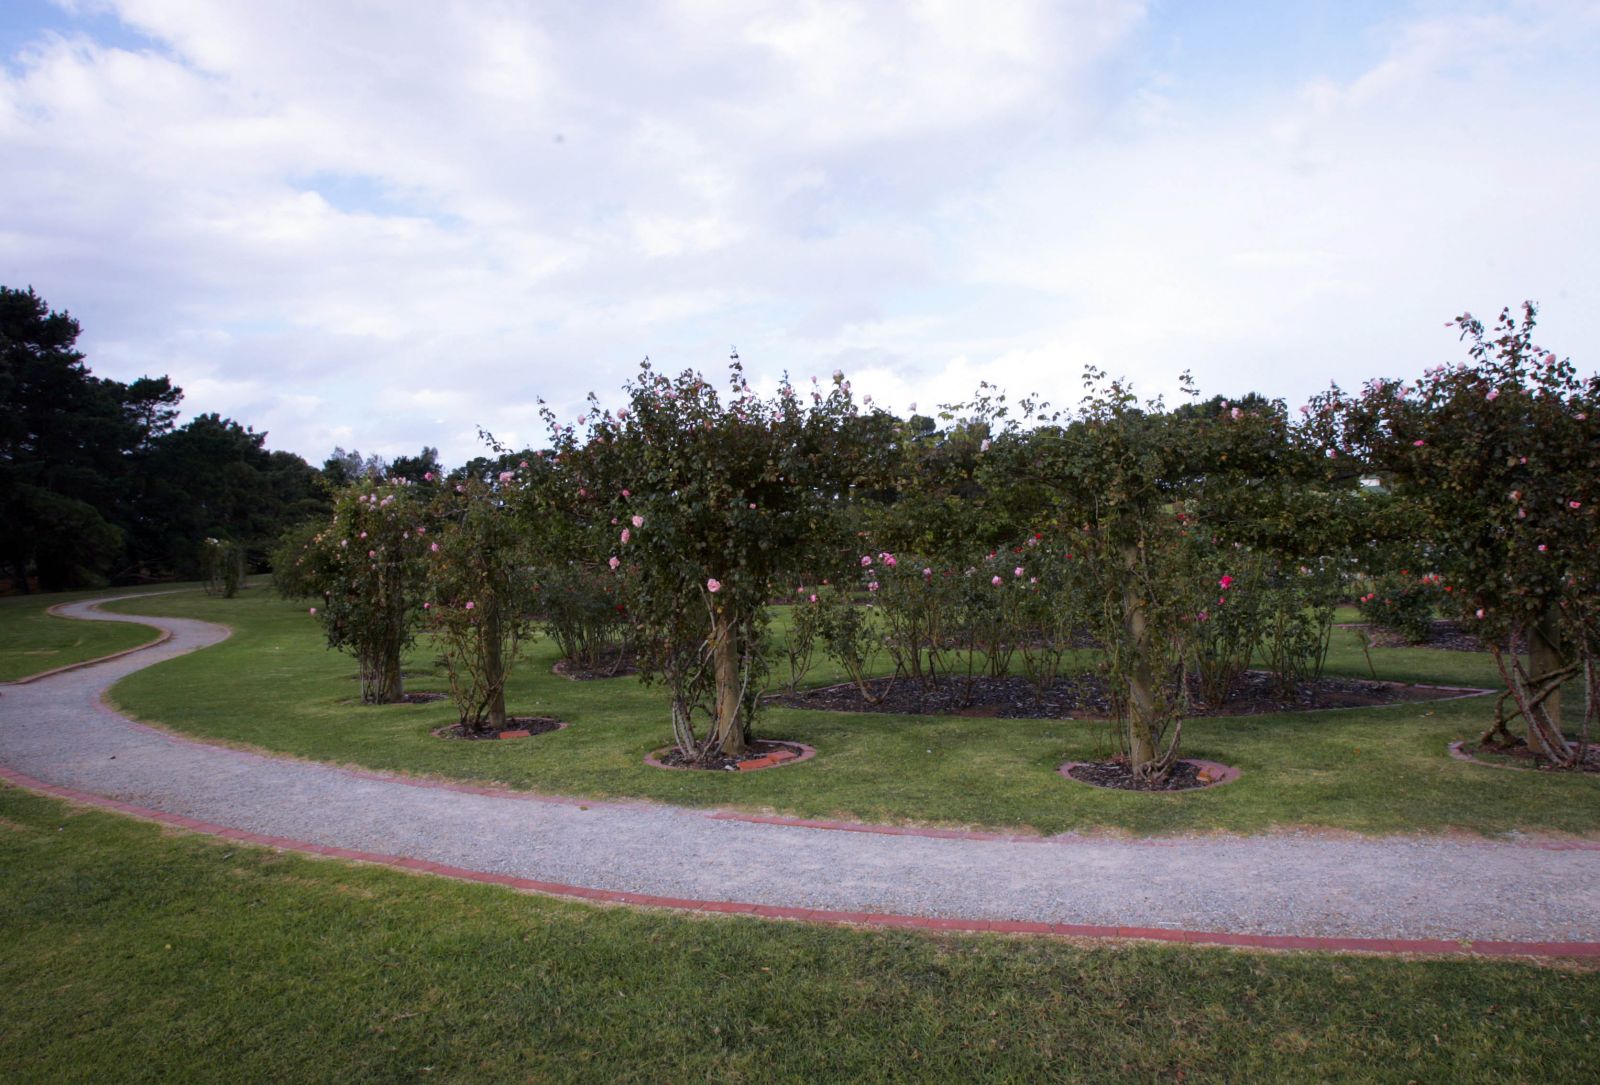 Xung quanh vườn hồng là các lối đi nhỏ dành cho du khách và cũng là điểm nhấn cho các gốc hoa hồng trồng xung quanh khoe sắc. 